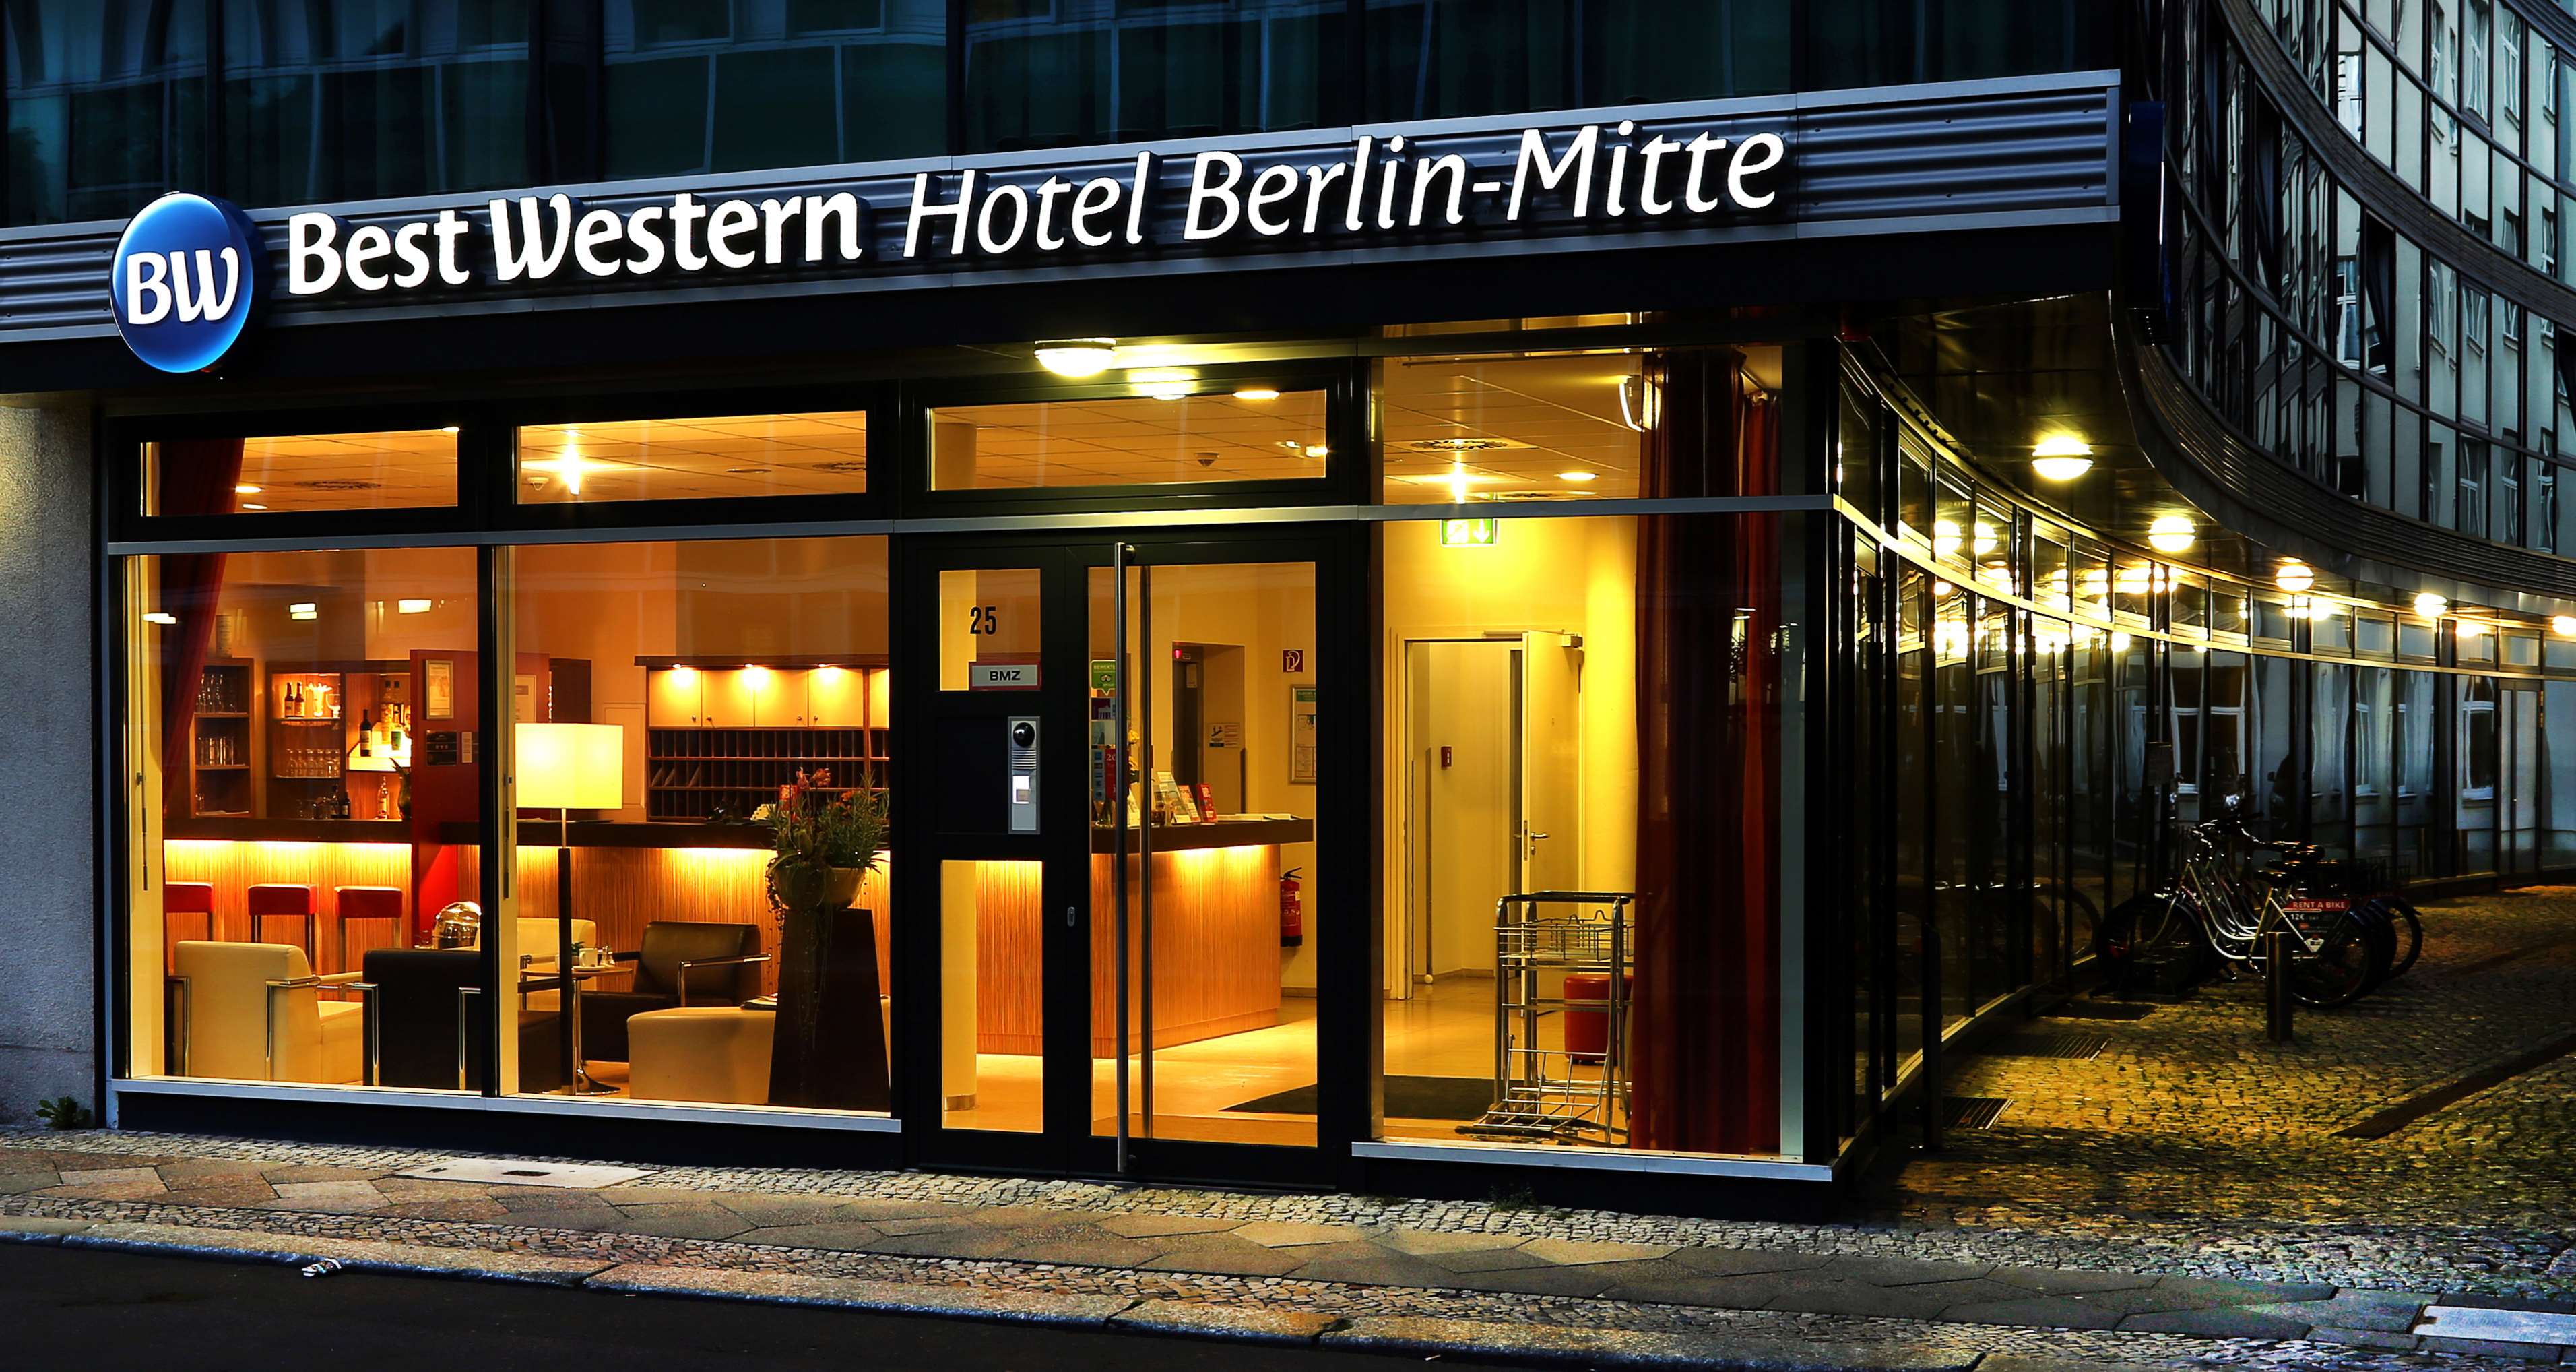 Best Western Hotel Berlin-Mitte - Hotels, Hotels-Restaurants, Berlin